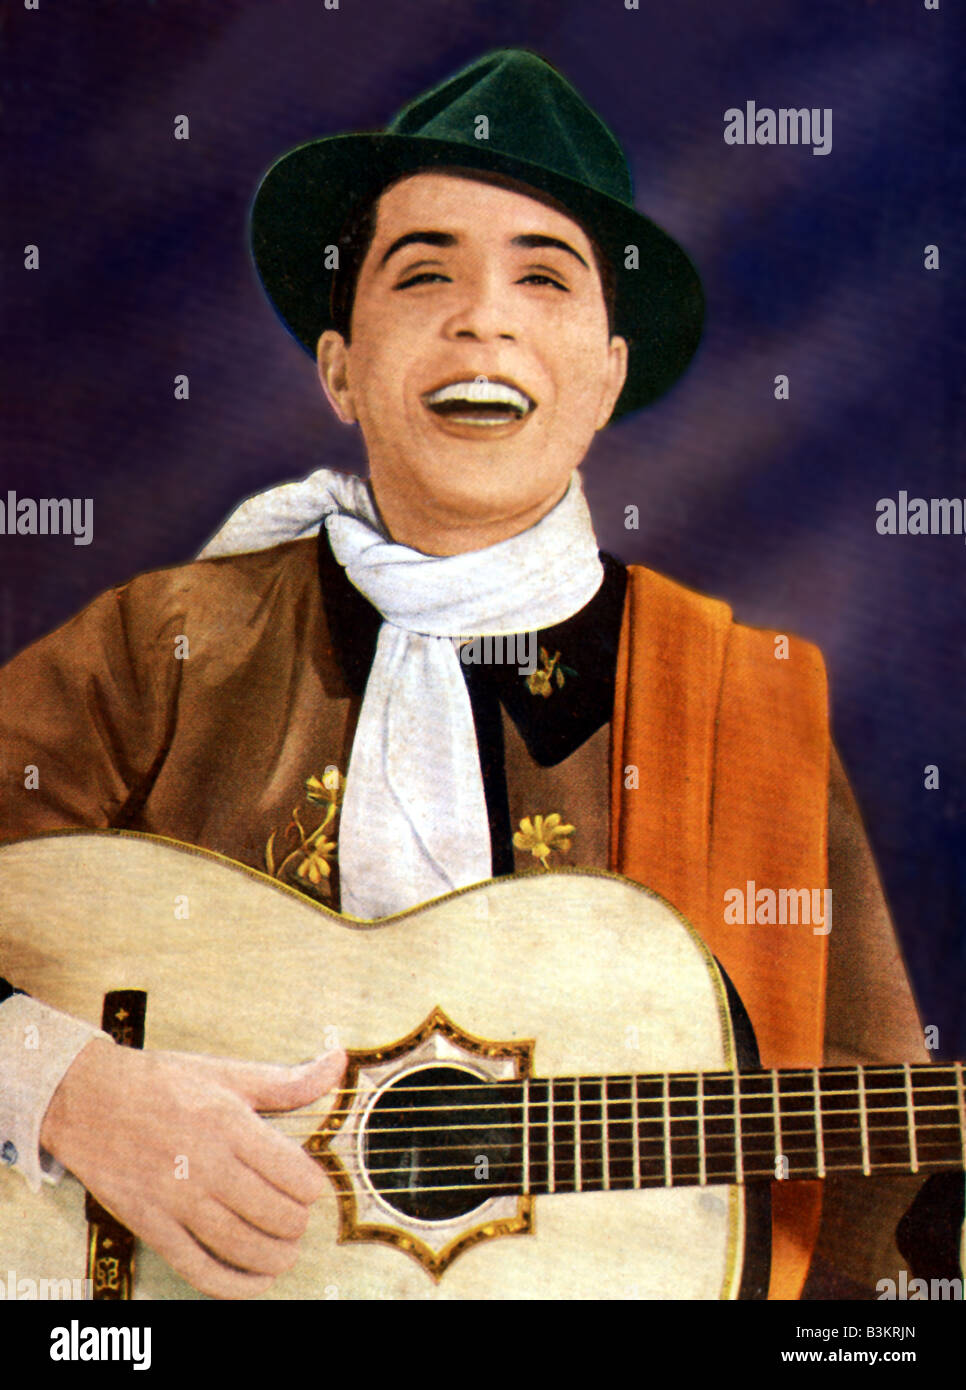 CARLOS CARDEL argentinischer Sänger und die berühmteste Figur in der Geschichte des Tangos. Er starb bei einem Flugzeugabsturz im Jahr 1935 Stockfoto